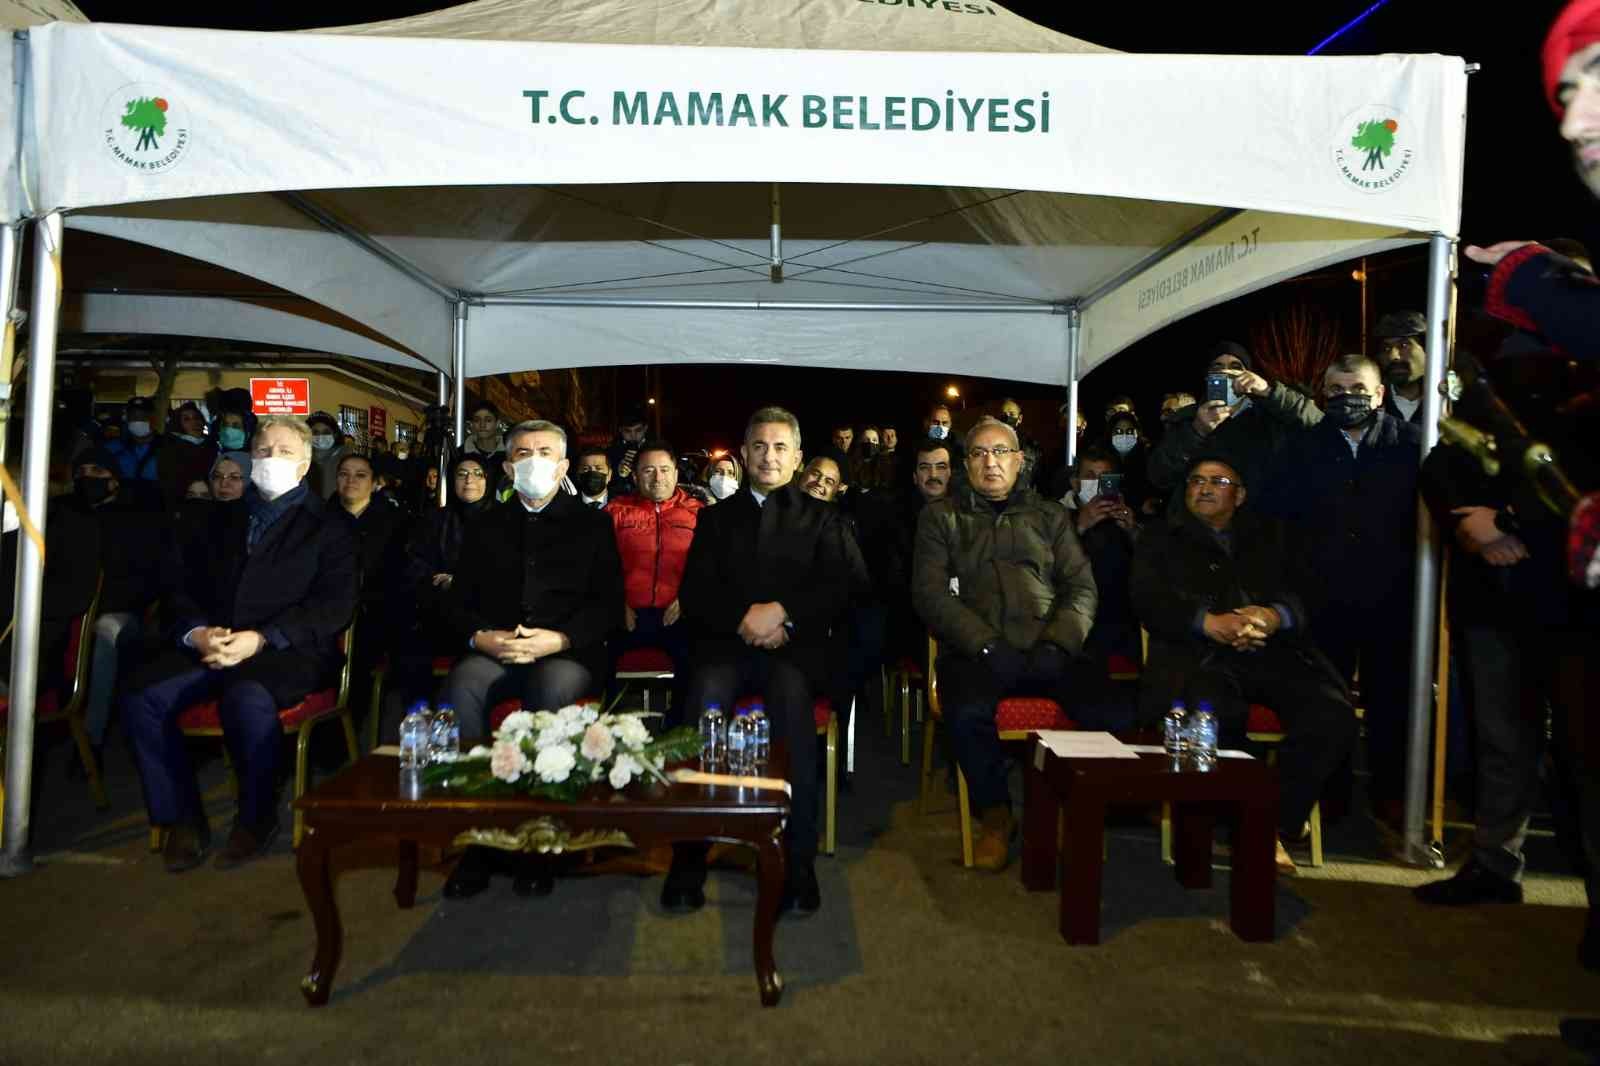 Mamak’ta Atatürk’ün Ankara’ya gelişinin 102. yıl dönümü kutlandı #ankara